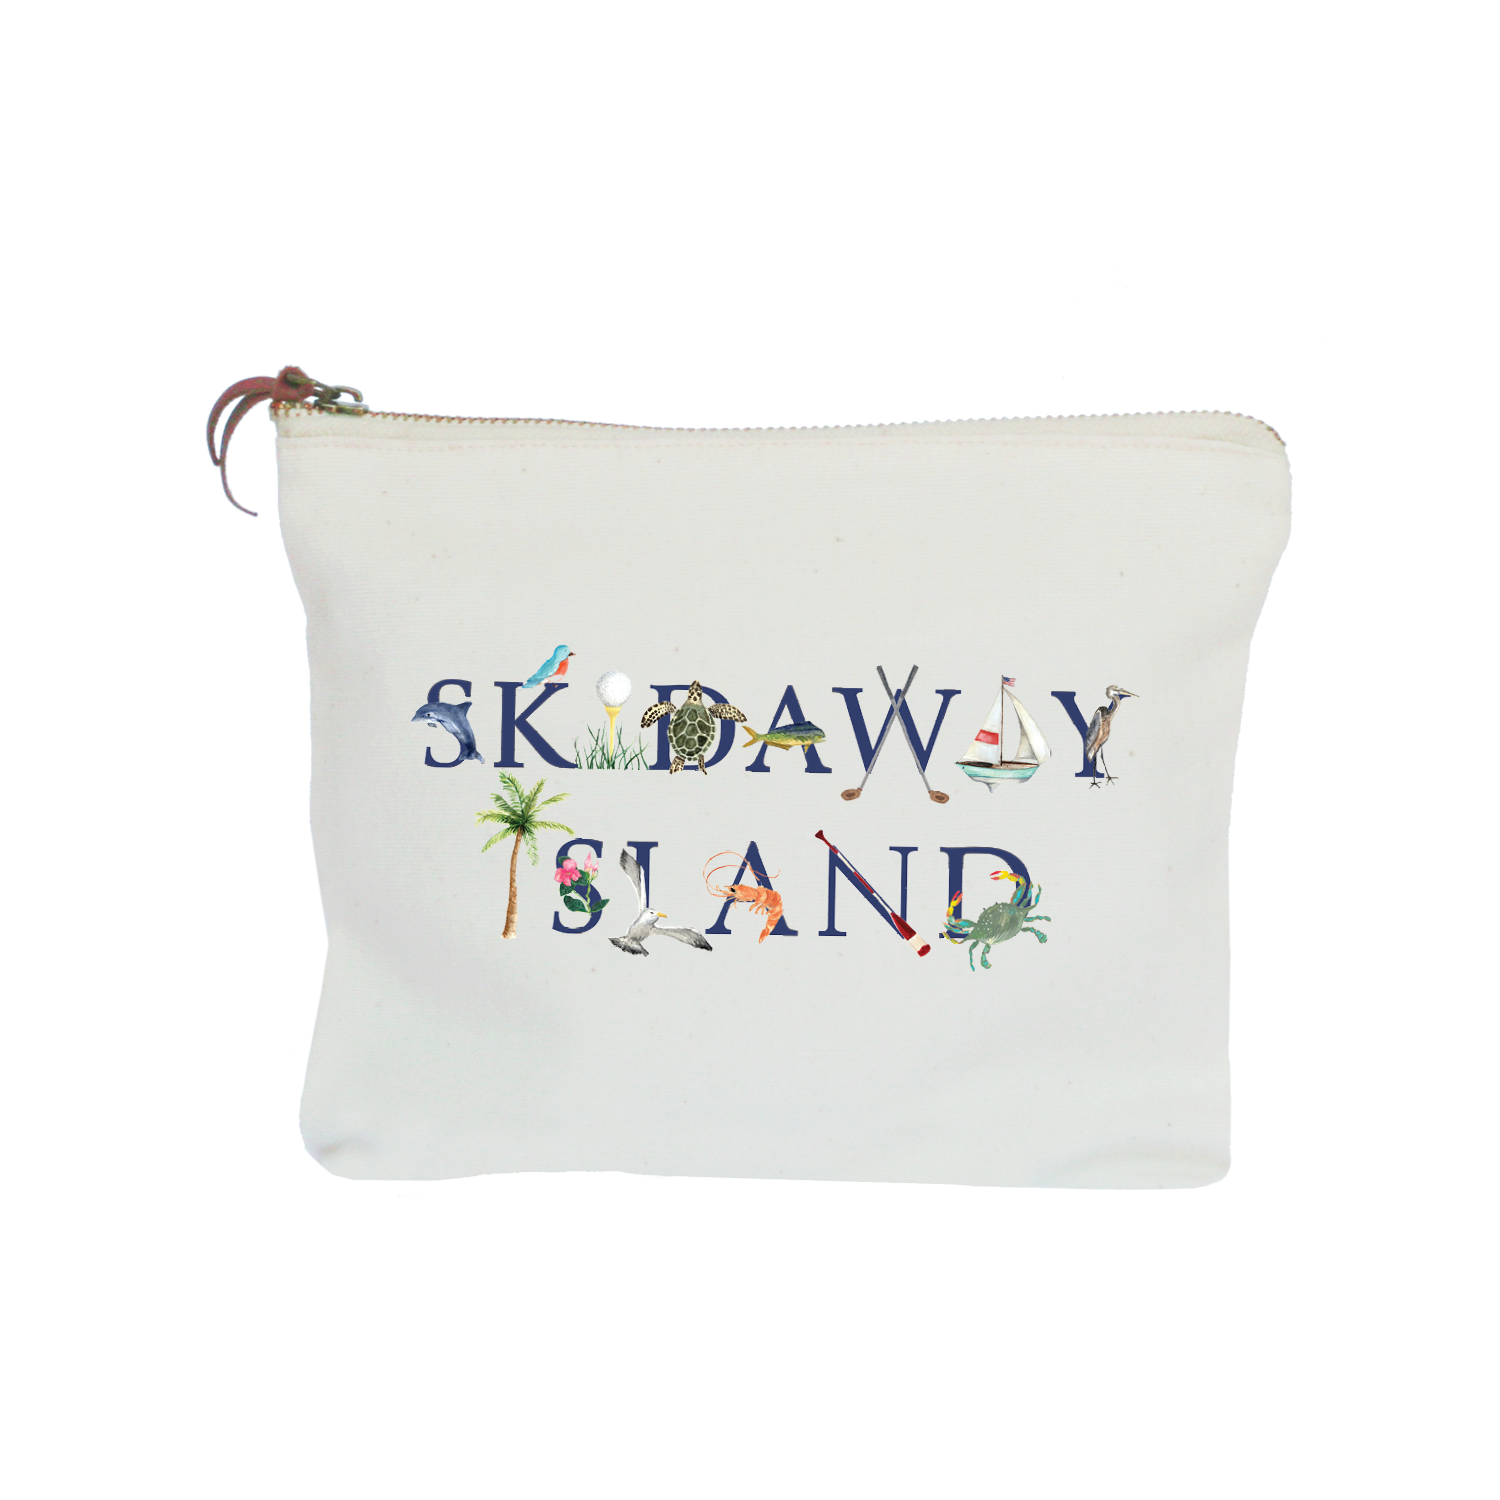 Skidaway Island zipper pouch